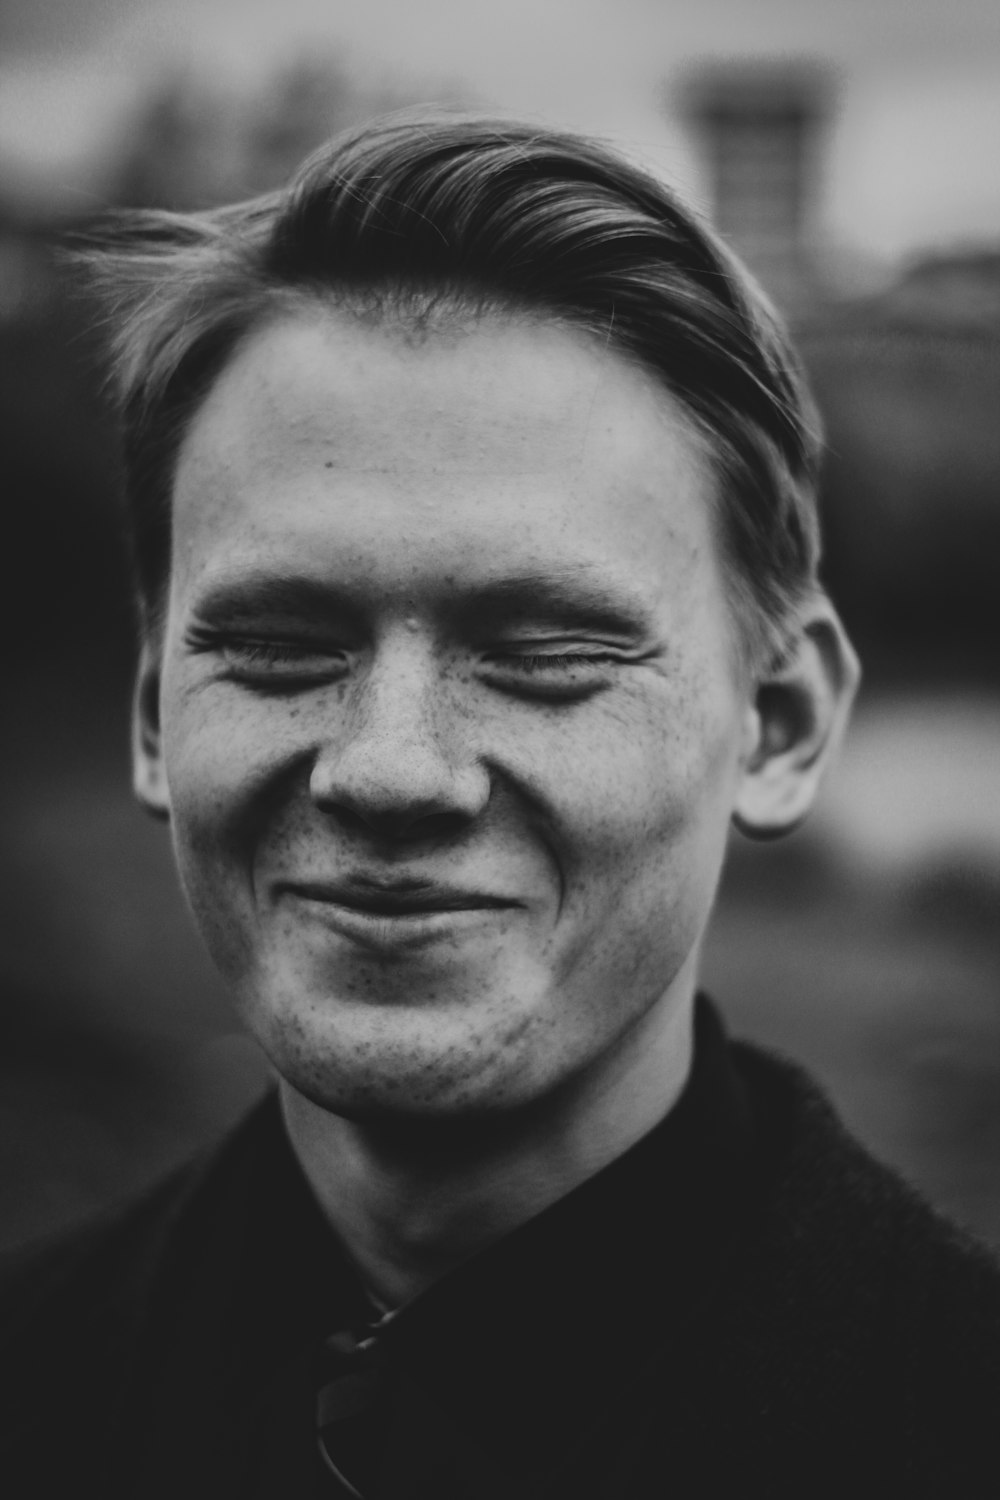 Foto en escala de grises de un hombre sonriente